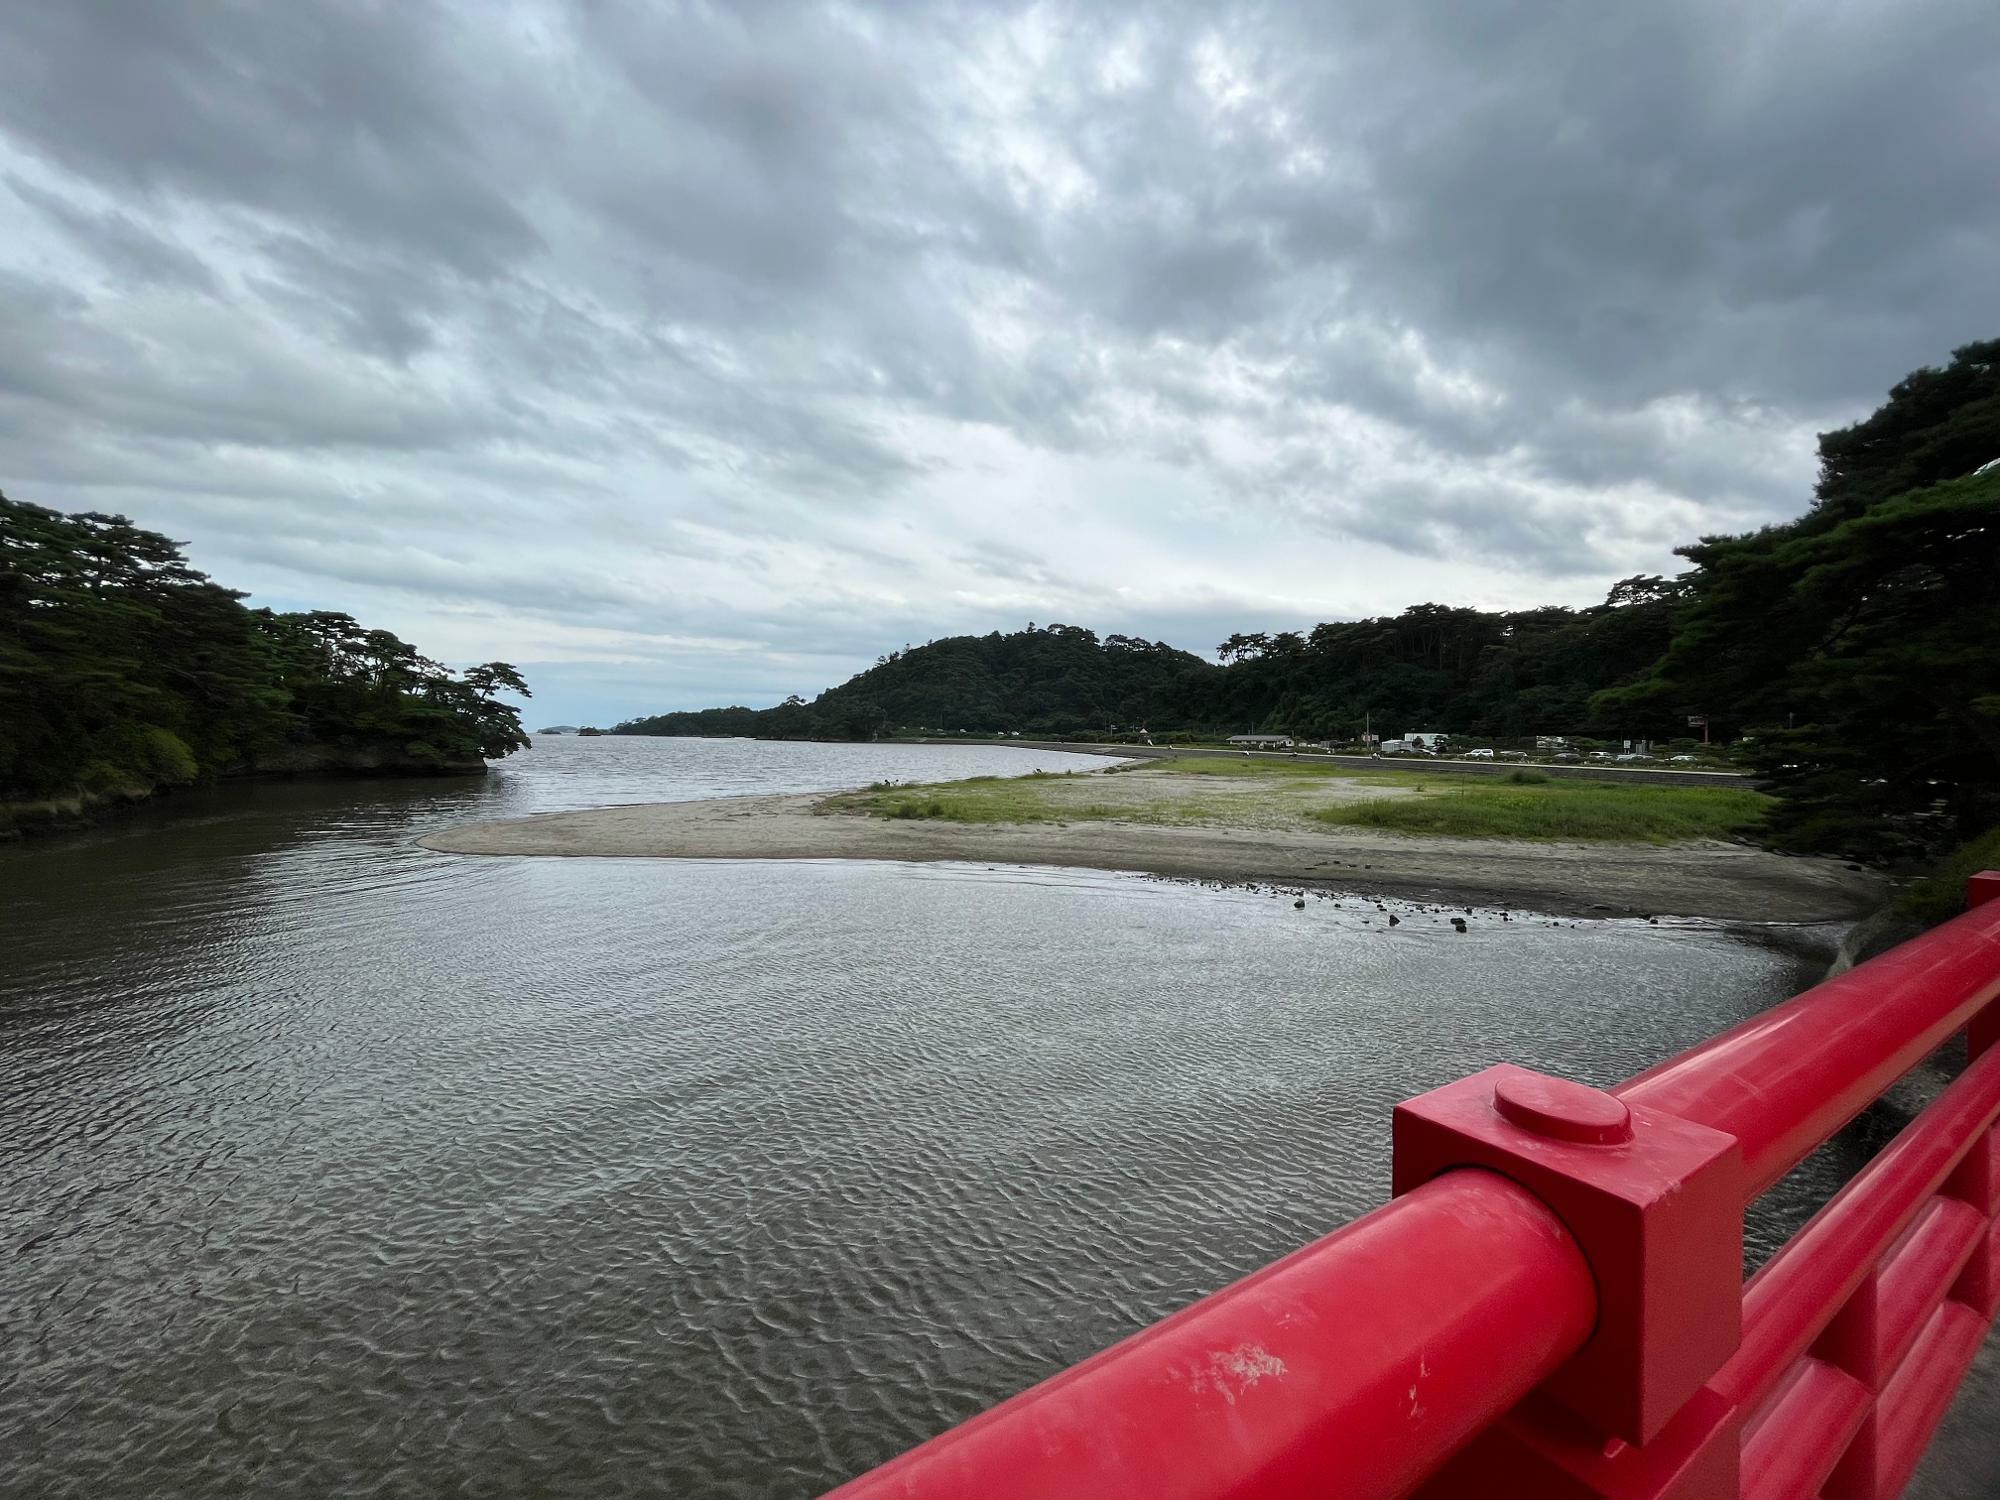 ▲ 「松島海浜公園」からすぐの「雄島(おじま)」からの撮影。ながーく緩やかなカーブを描いている公園